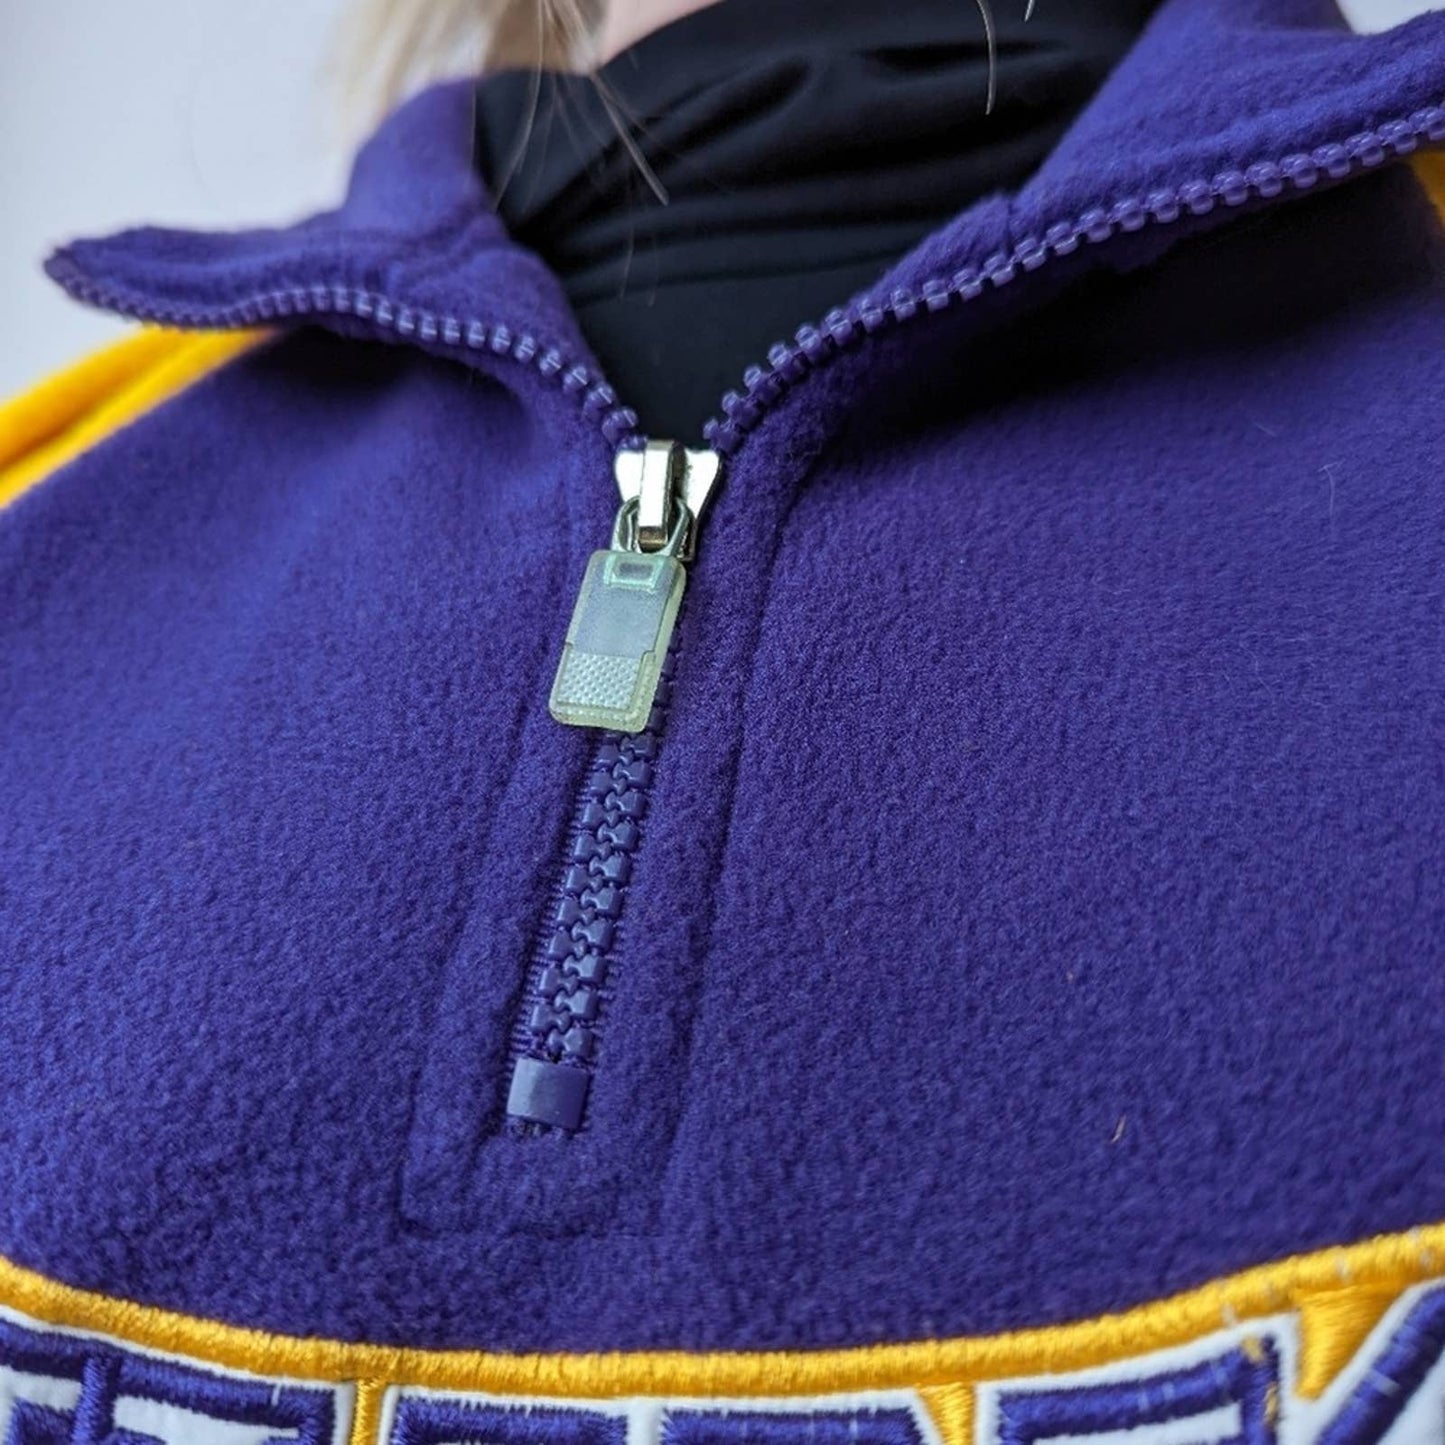 Minnesota Vikings NFL Football Pullover Fleece Sweatshirt